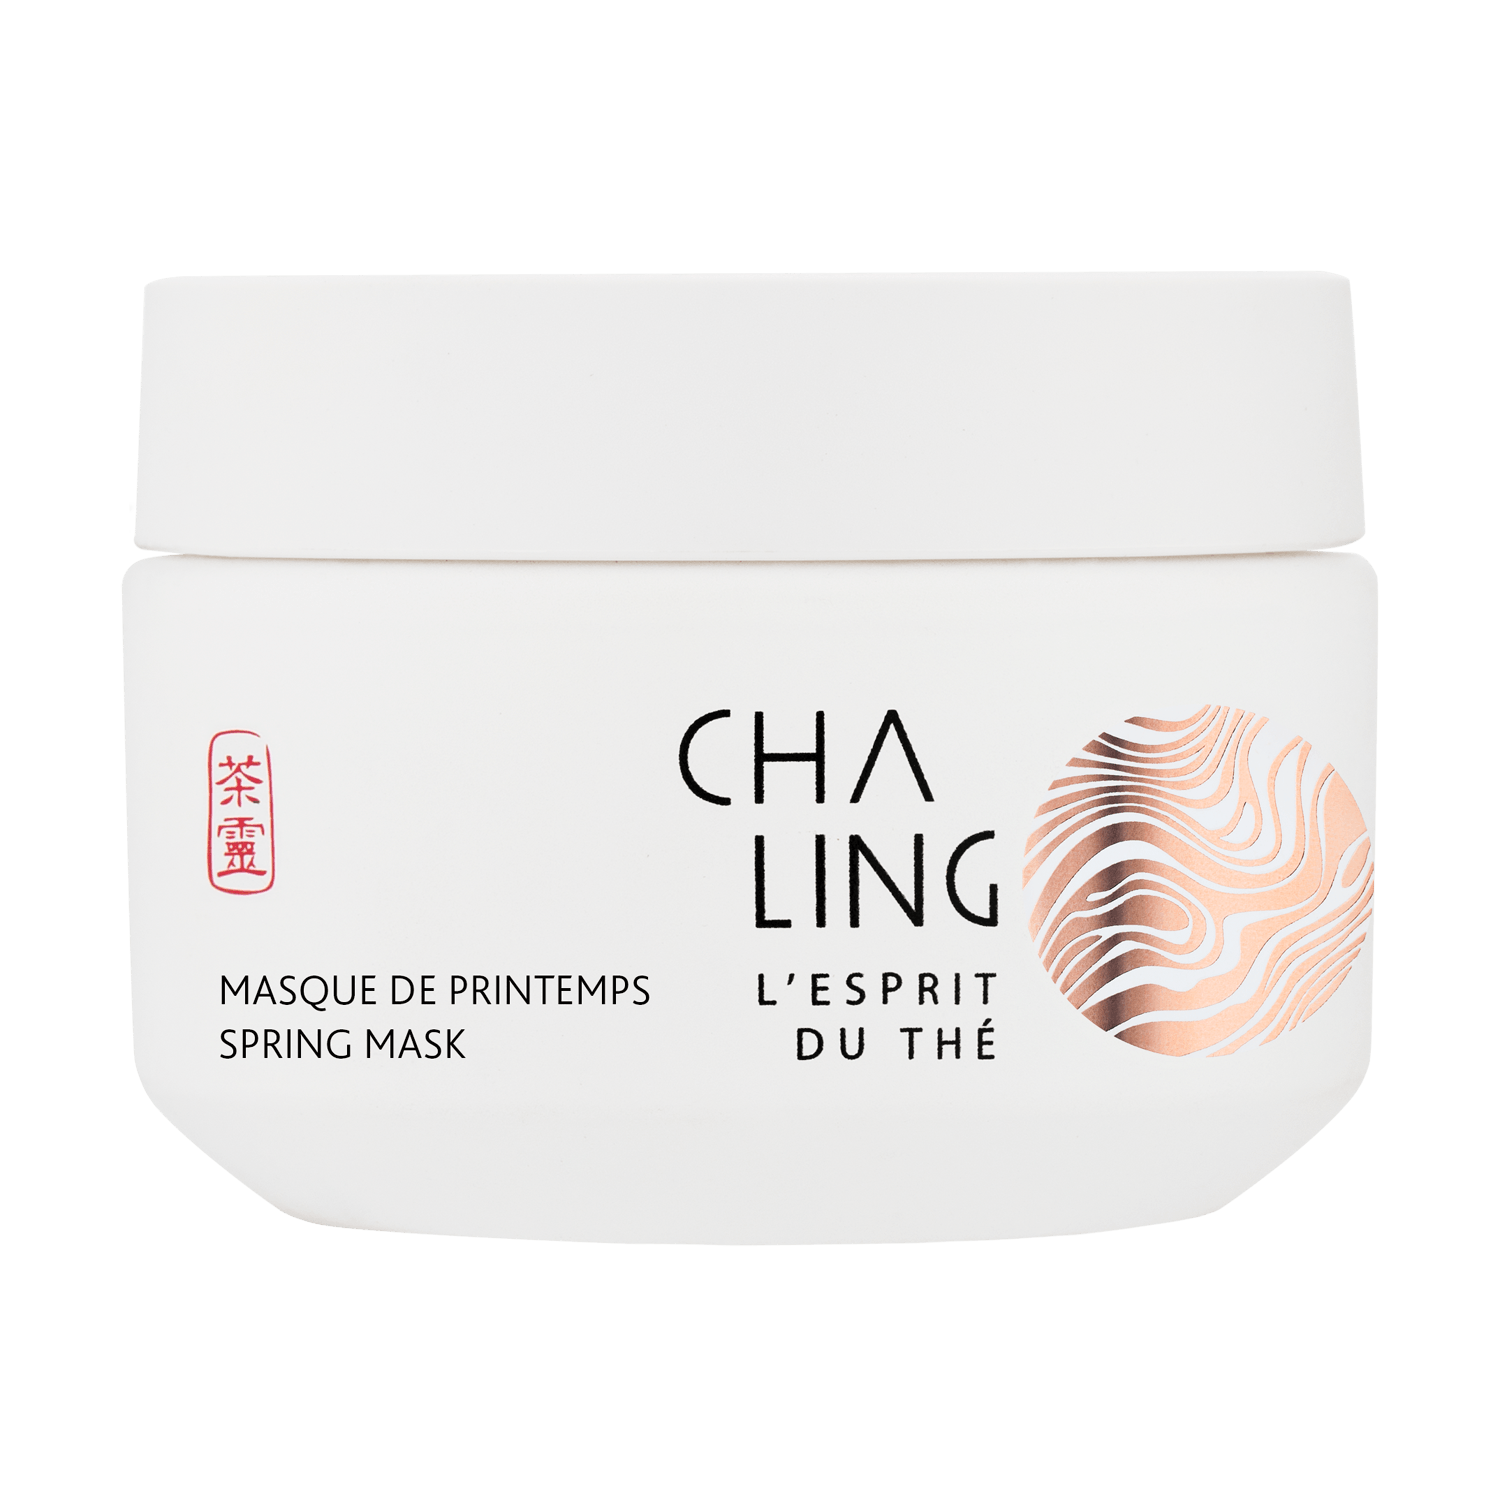 cha ling cosmetics range 